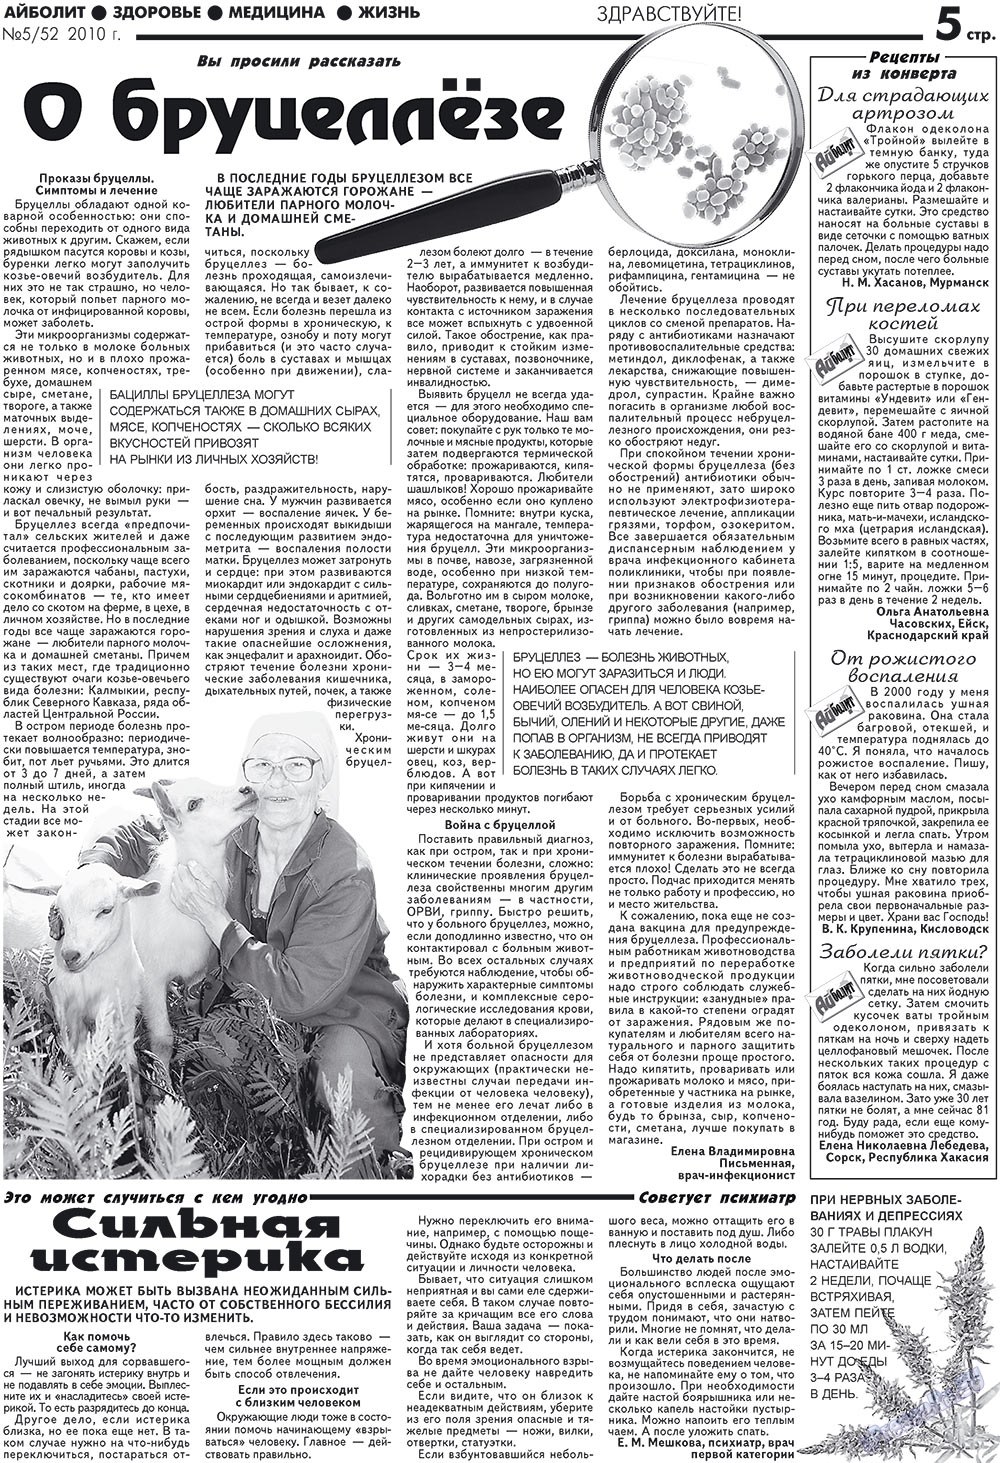 АйБолит, газета. 2010 №5 стр.5